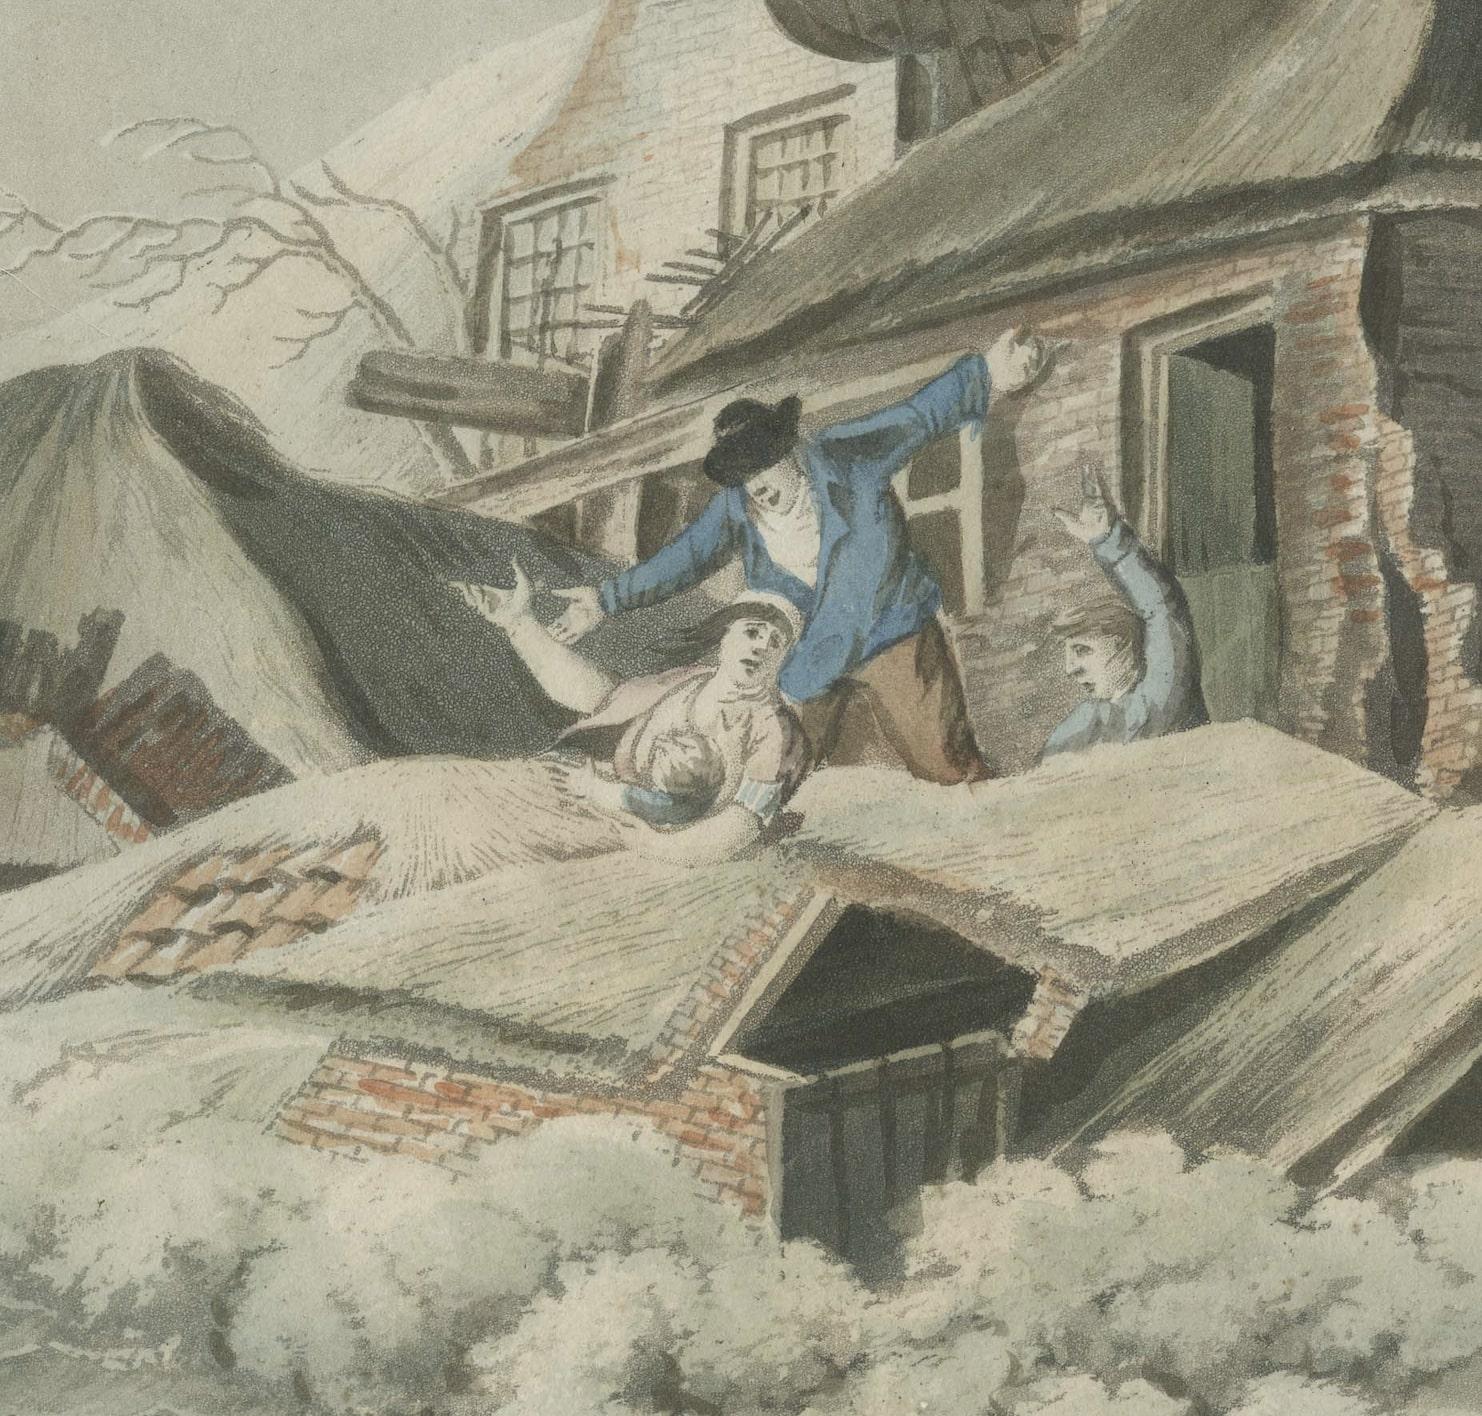 'T Dorp Oosterhout verwoest door den Watervloed in 1820
(Das Dorf Oosterhout wurde 1820 durch die Flut zerstört)

Die Aquarellzeichnung schildert anschaulich eine katastrophale Überschwemmung im Dorf Oosterhout in Holland, die sich 1820 ereignete.